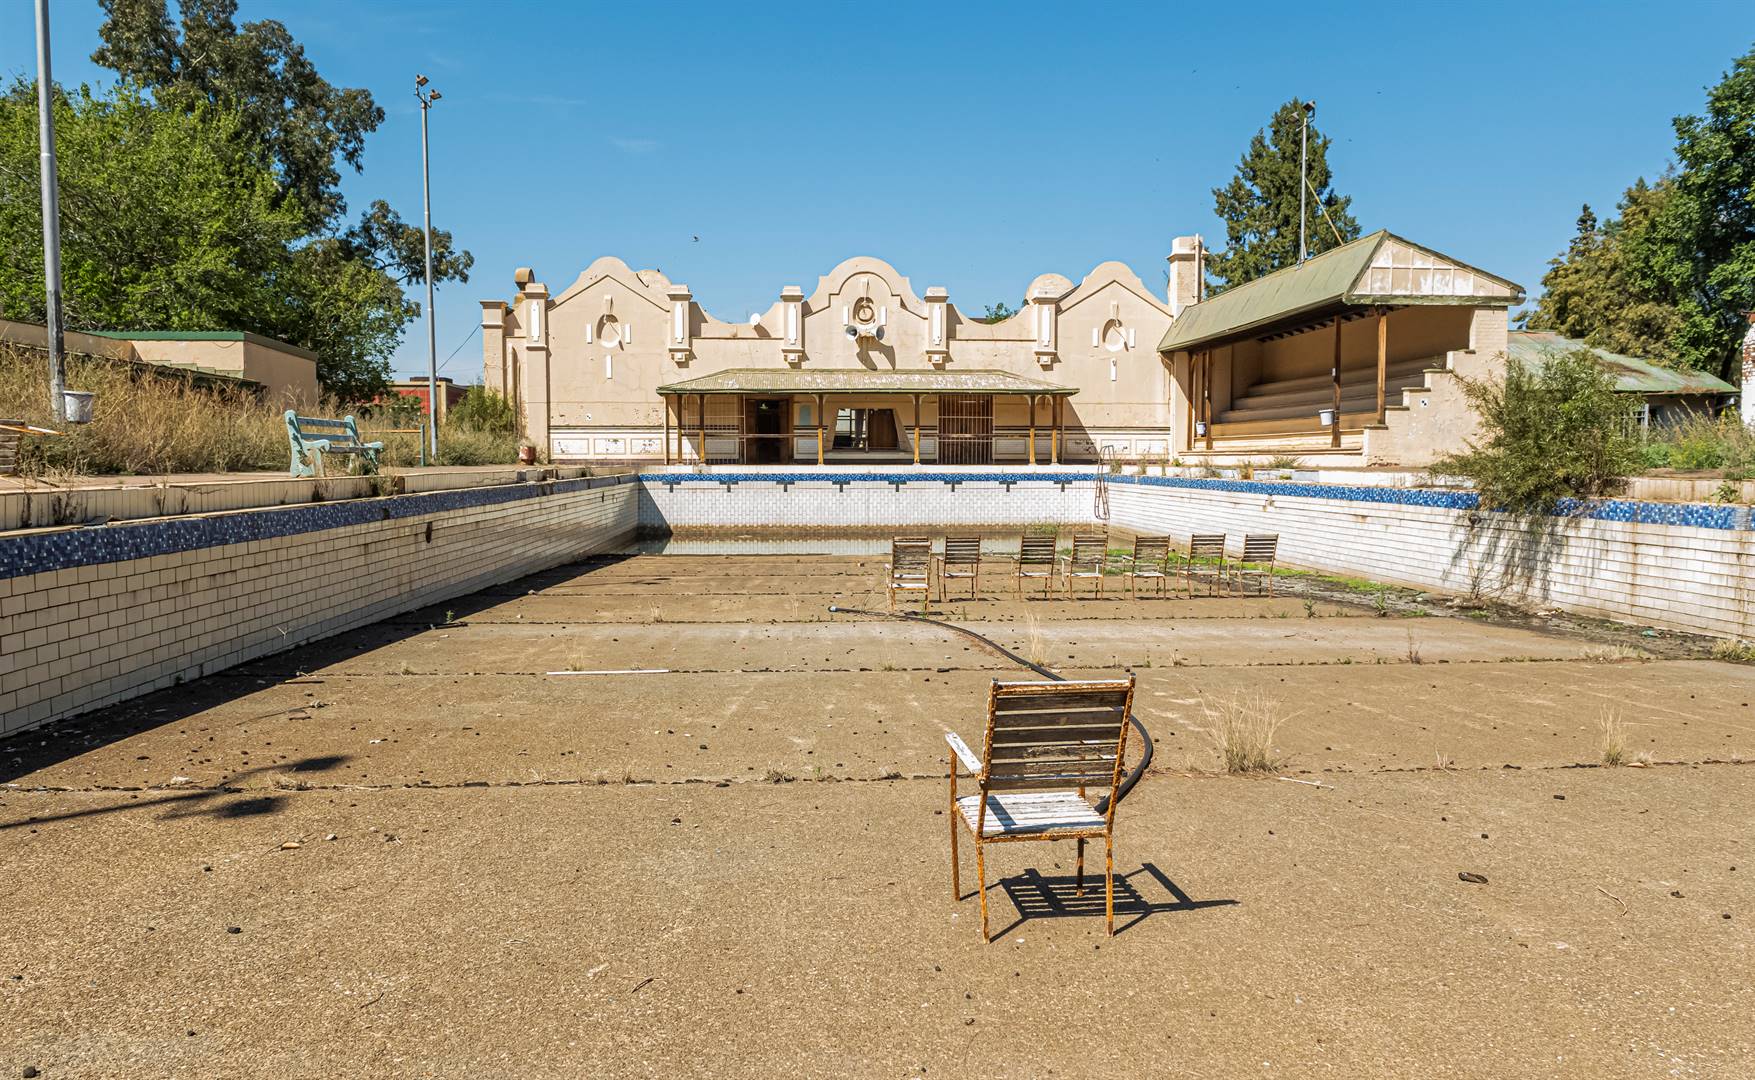 Die historiese Arthur Nathan-swembad is in 1907 geopen as die eerste munisipale swembad in Bloemfontein. Dit is ’n nasionale gedenkwaardigheid, maar het oor die jare verval en in onbruik geraak.Foto: DEON RAATH